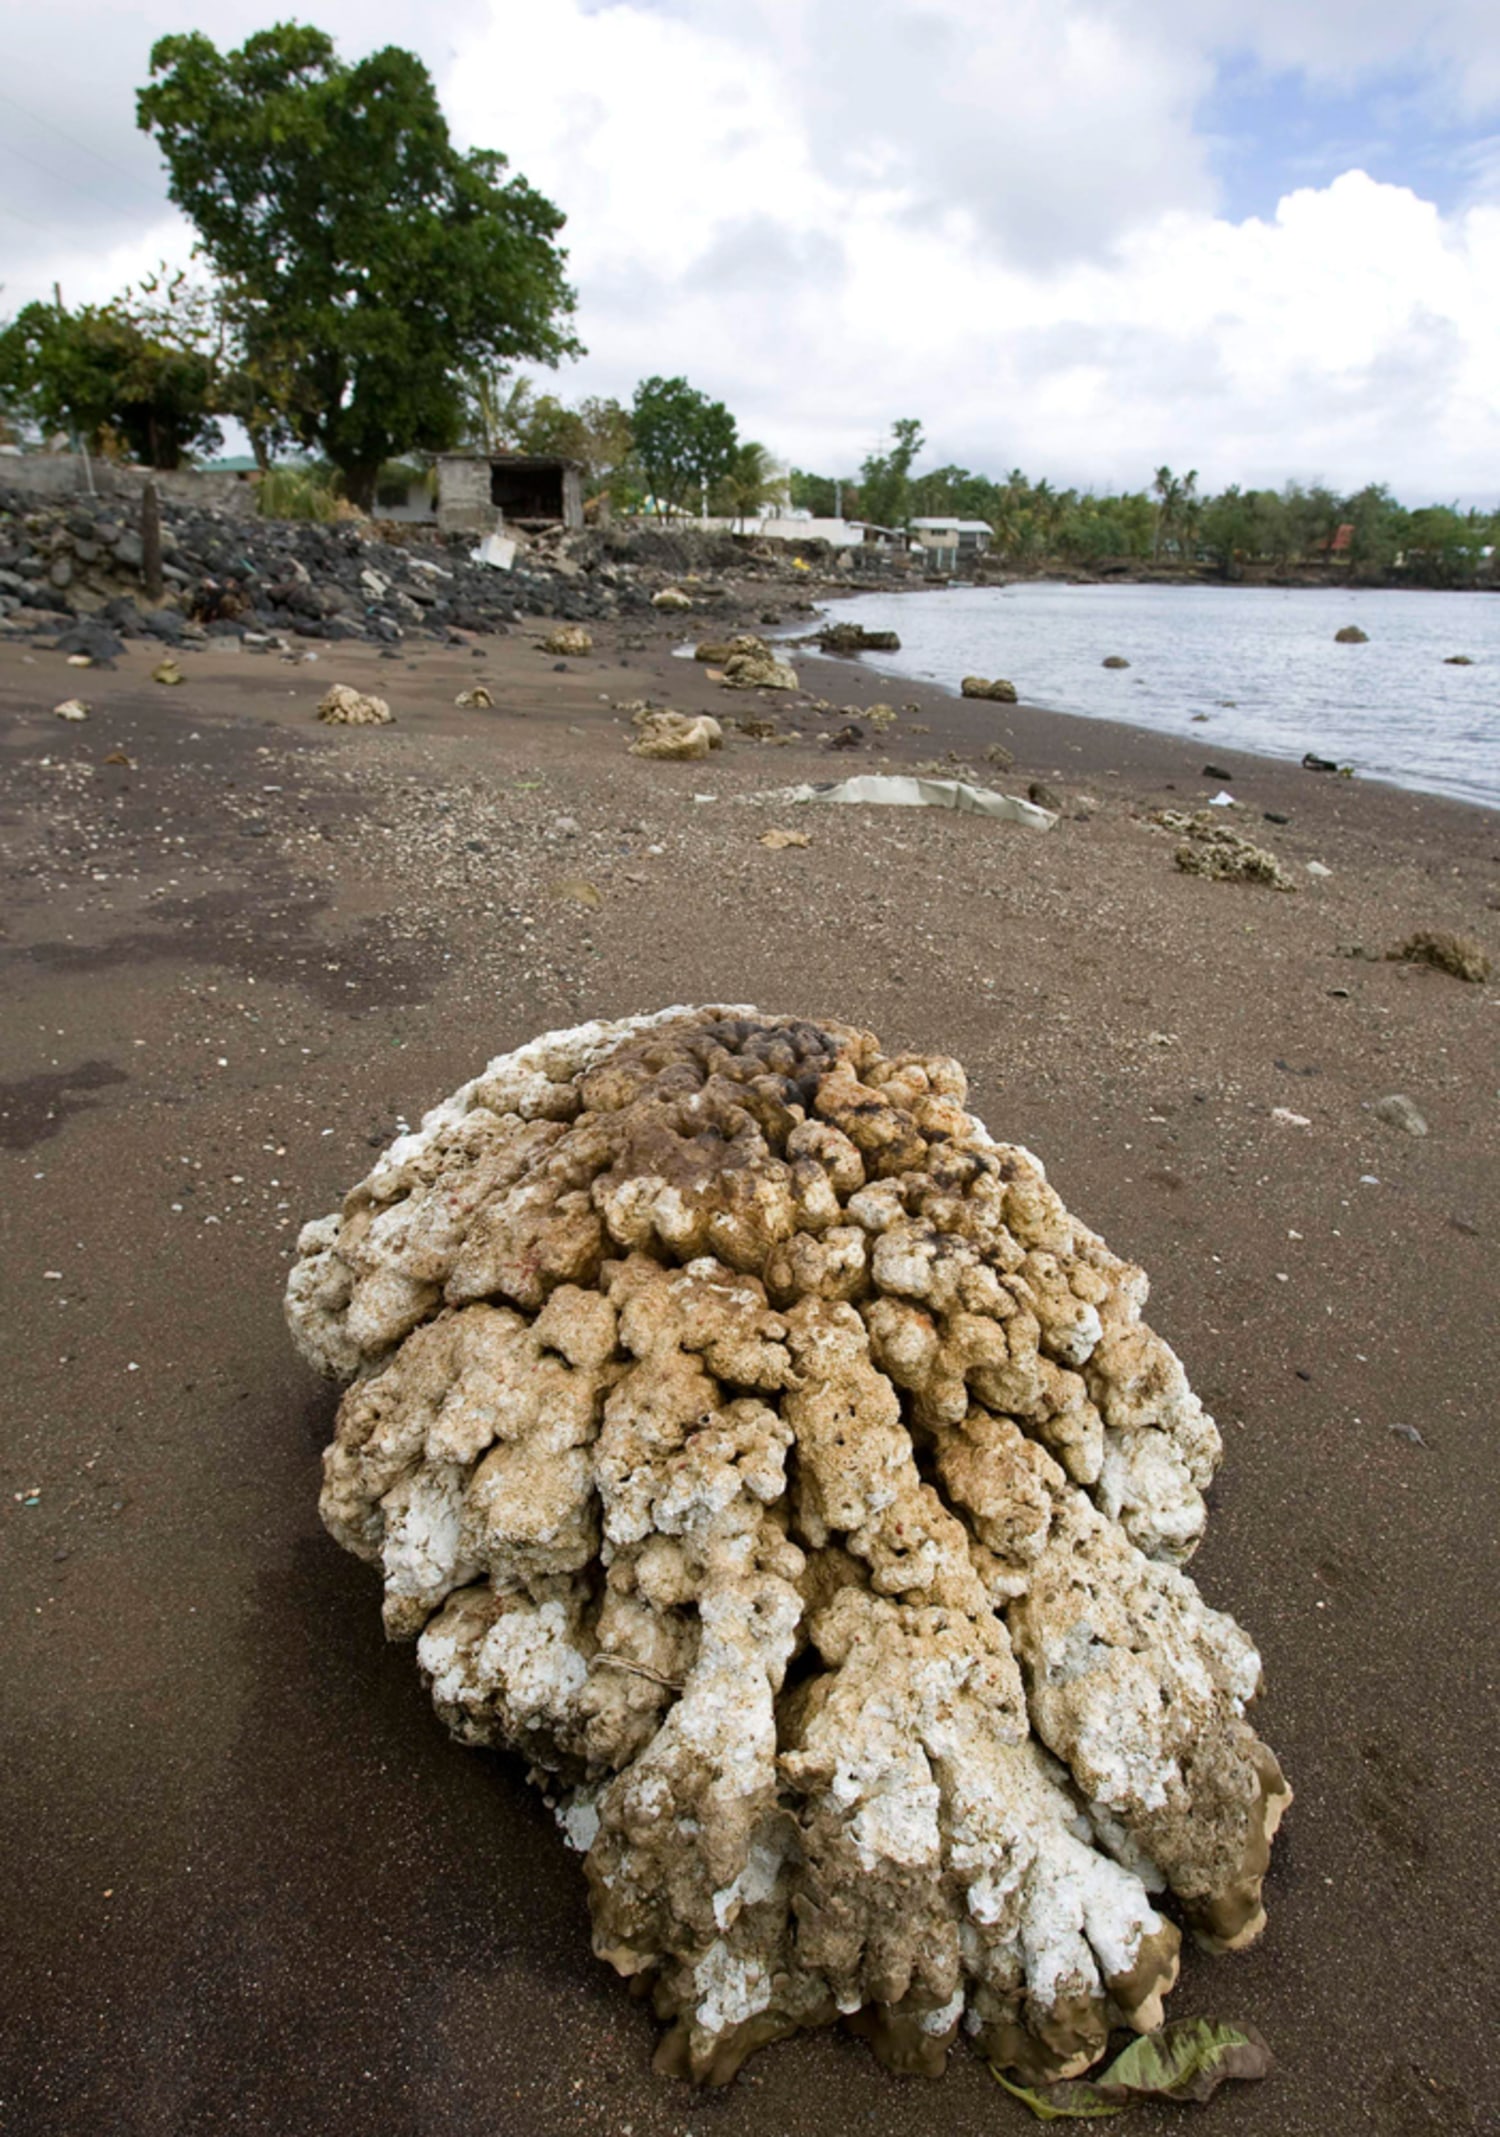 Samoa tsunamis obliterate some coral reefs